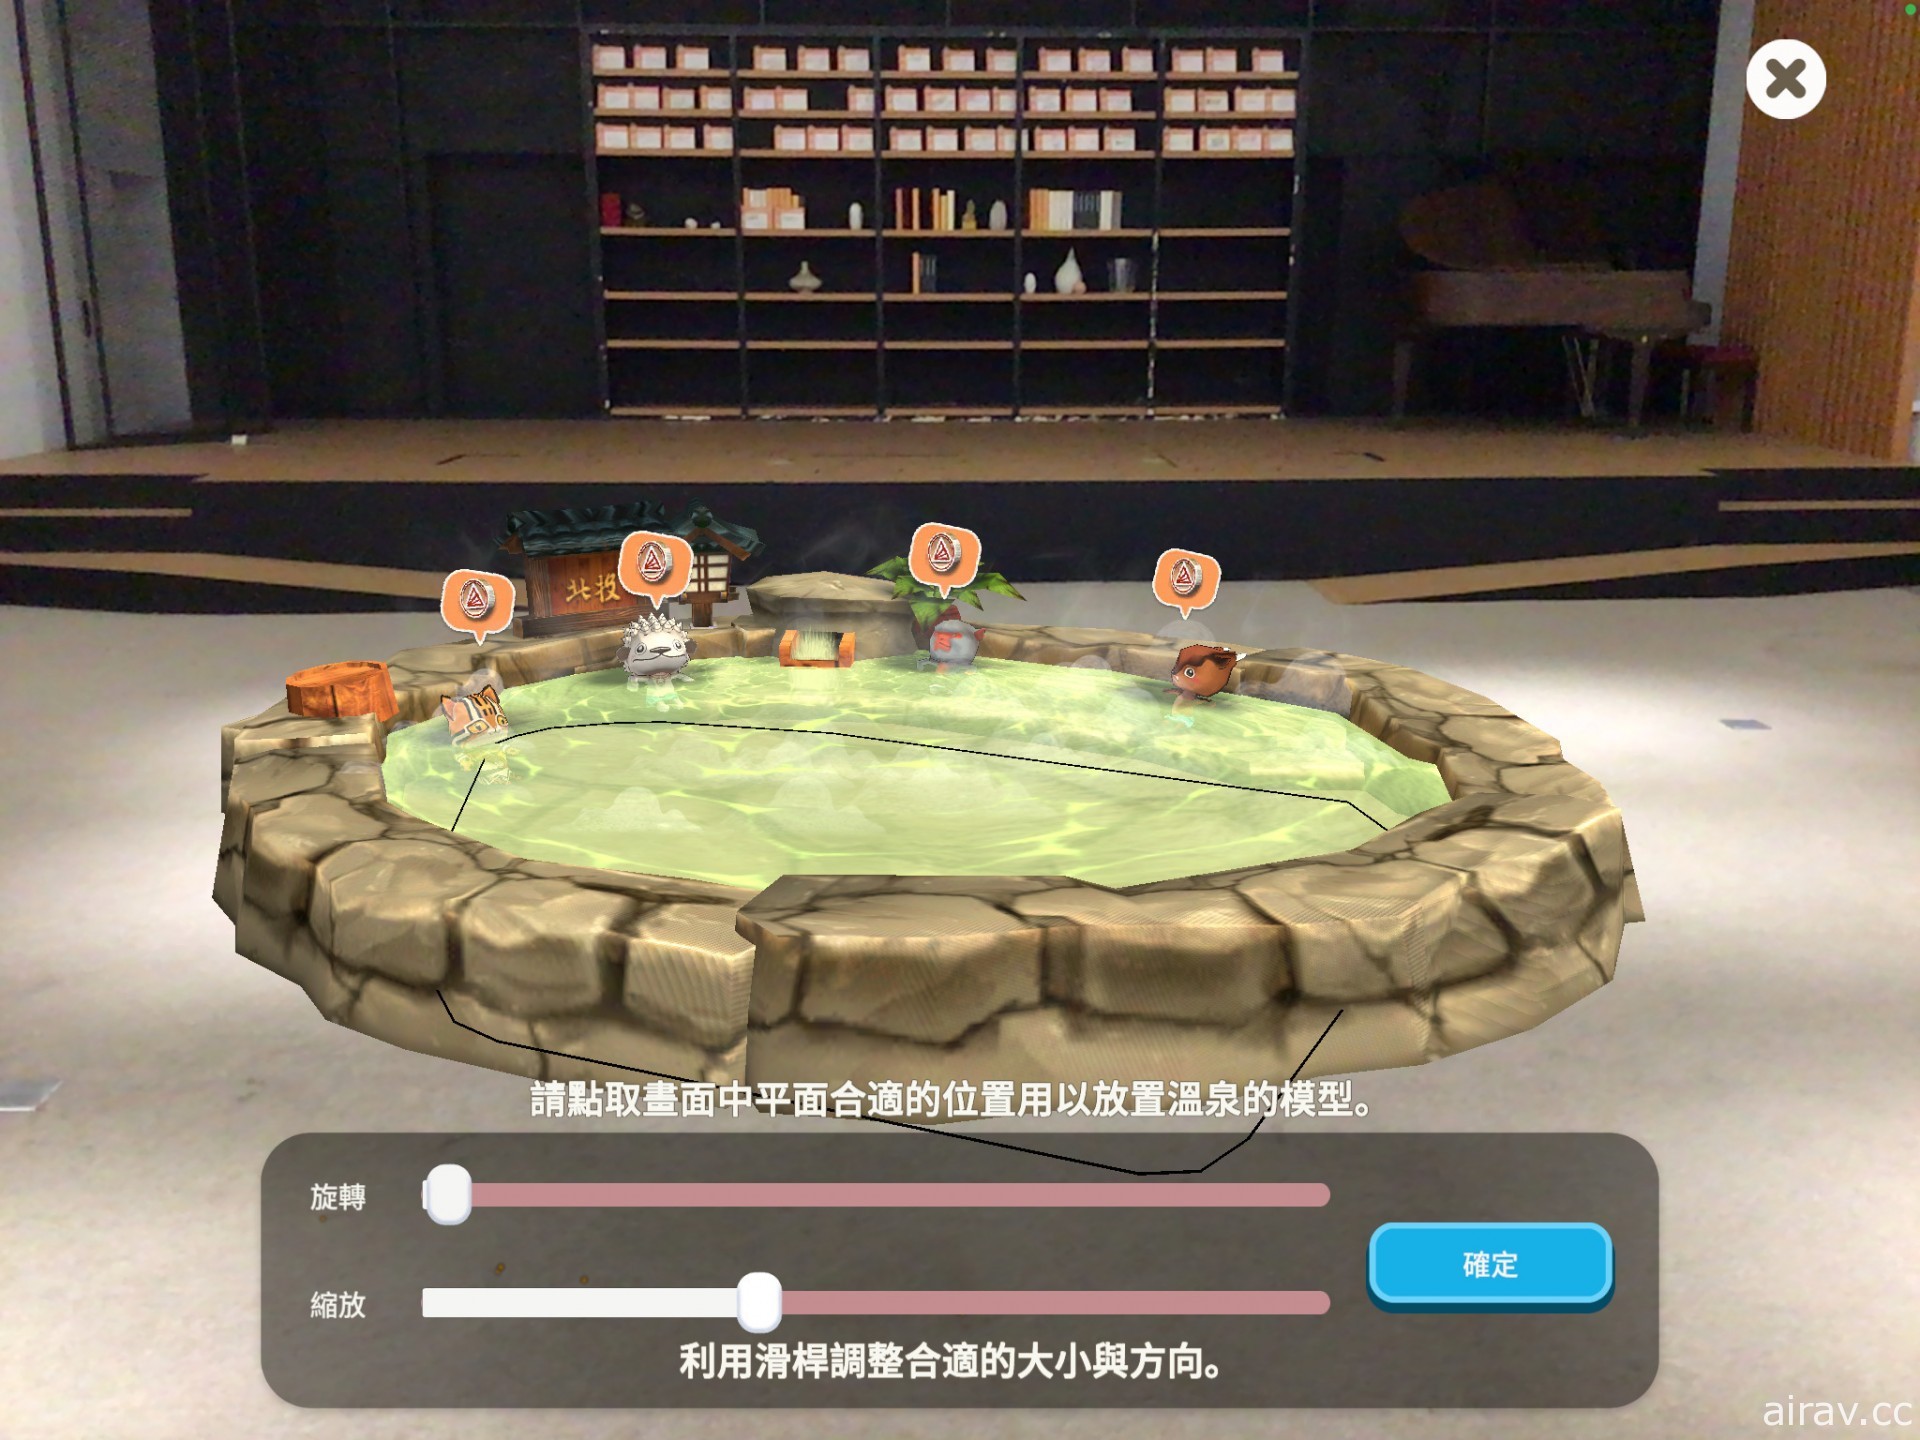 温泉主题放置经营游戏《映泉乡》开放下载 融入多项台湾特色文化